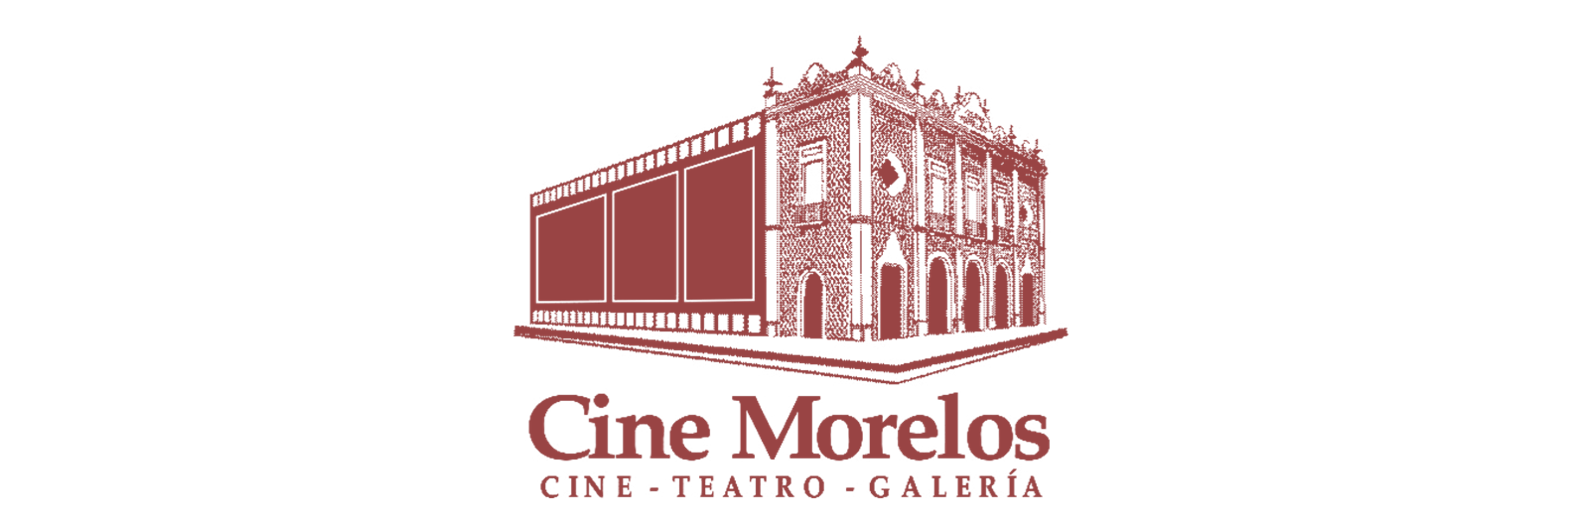 Cine Morelos